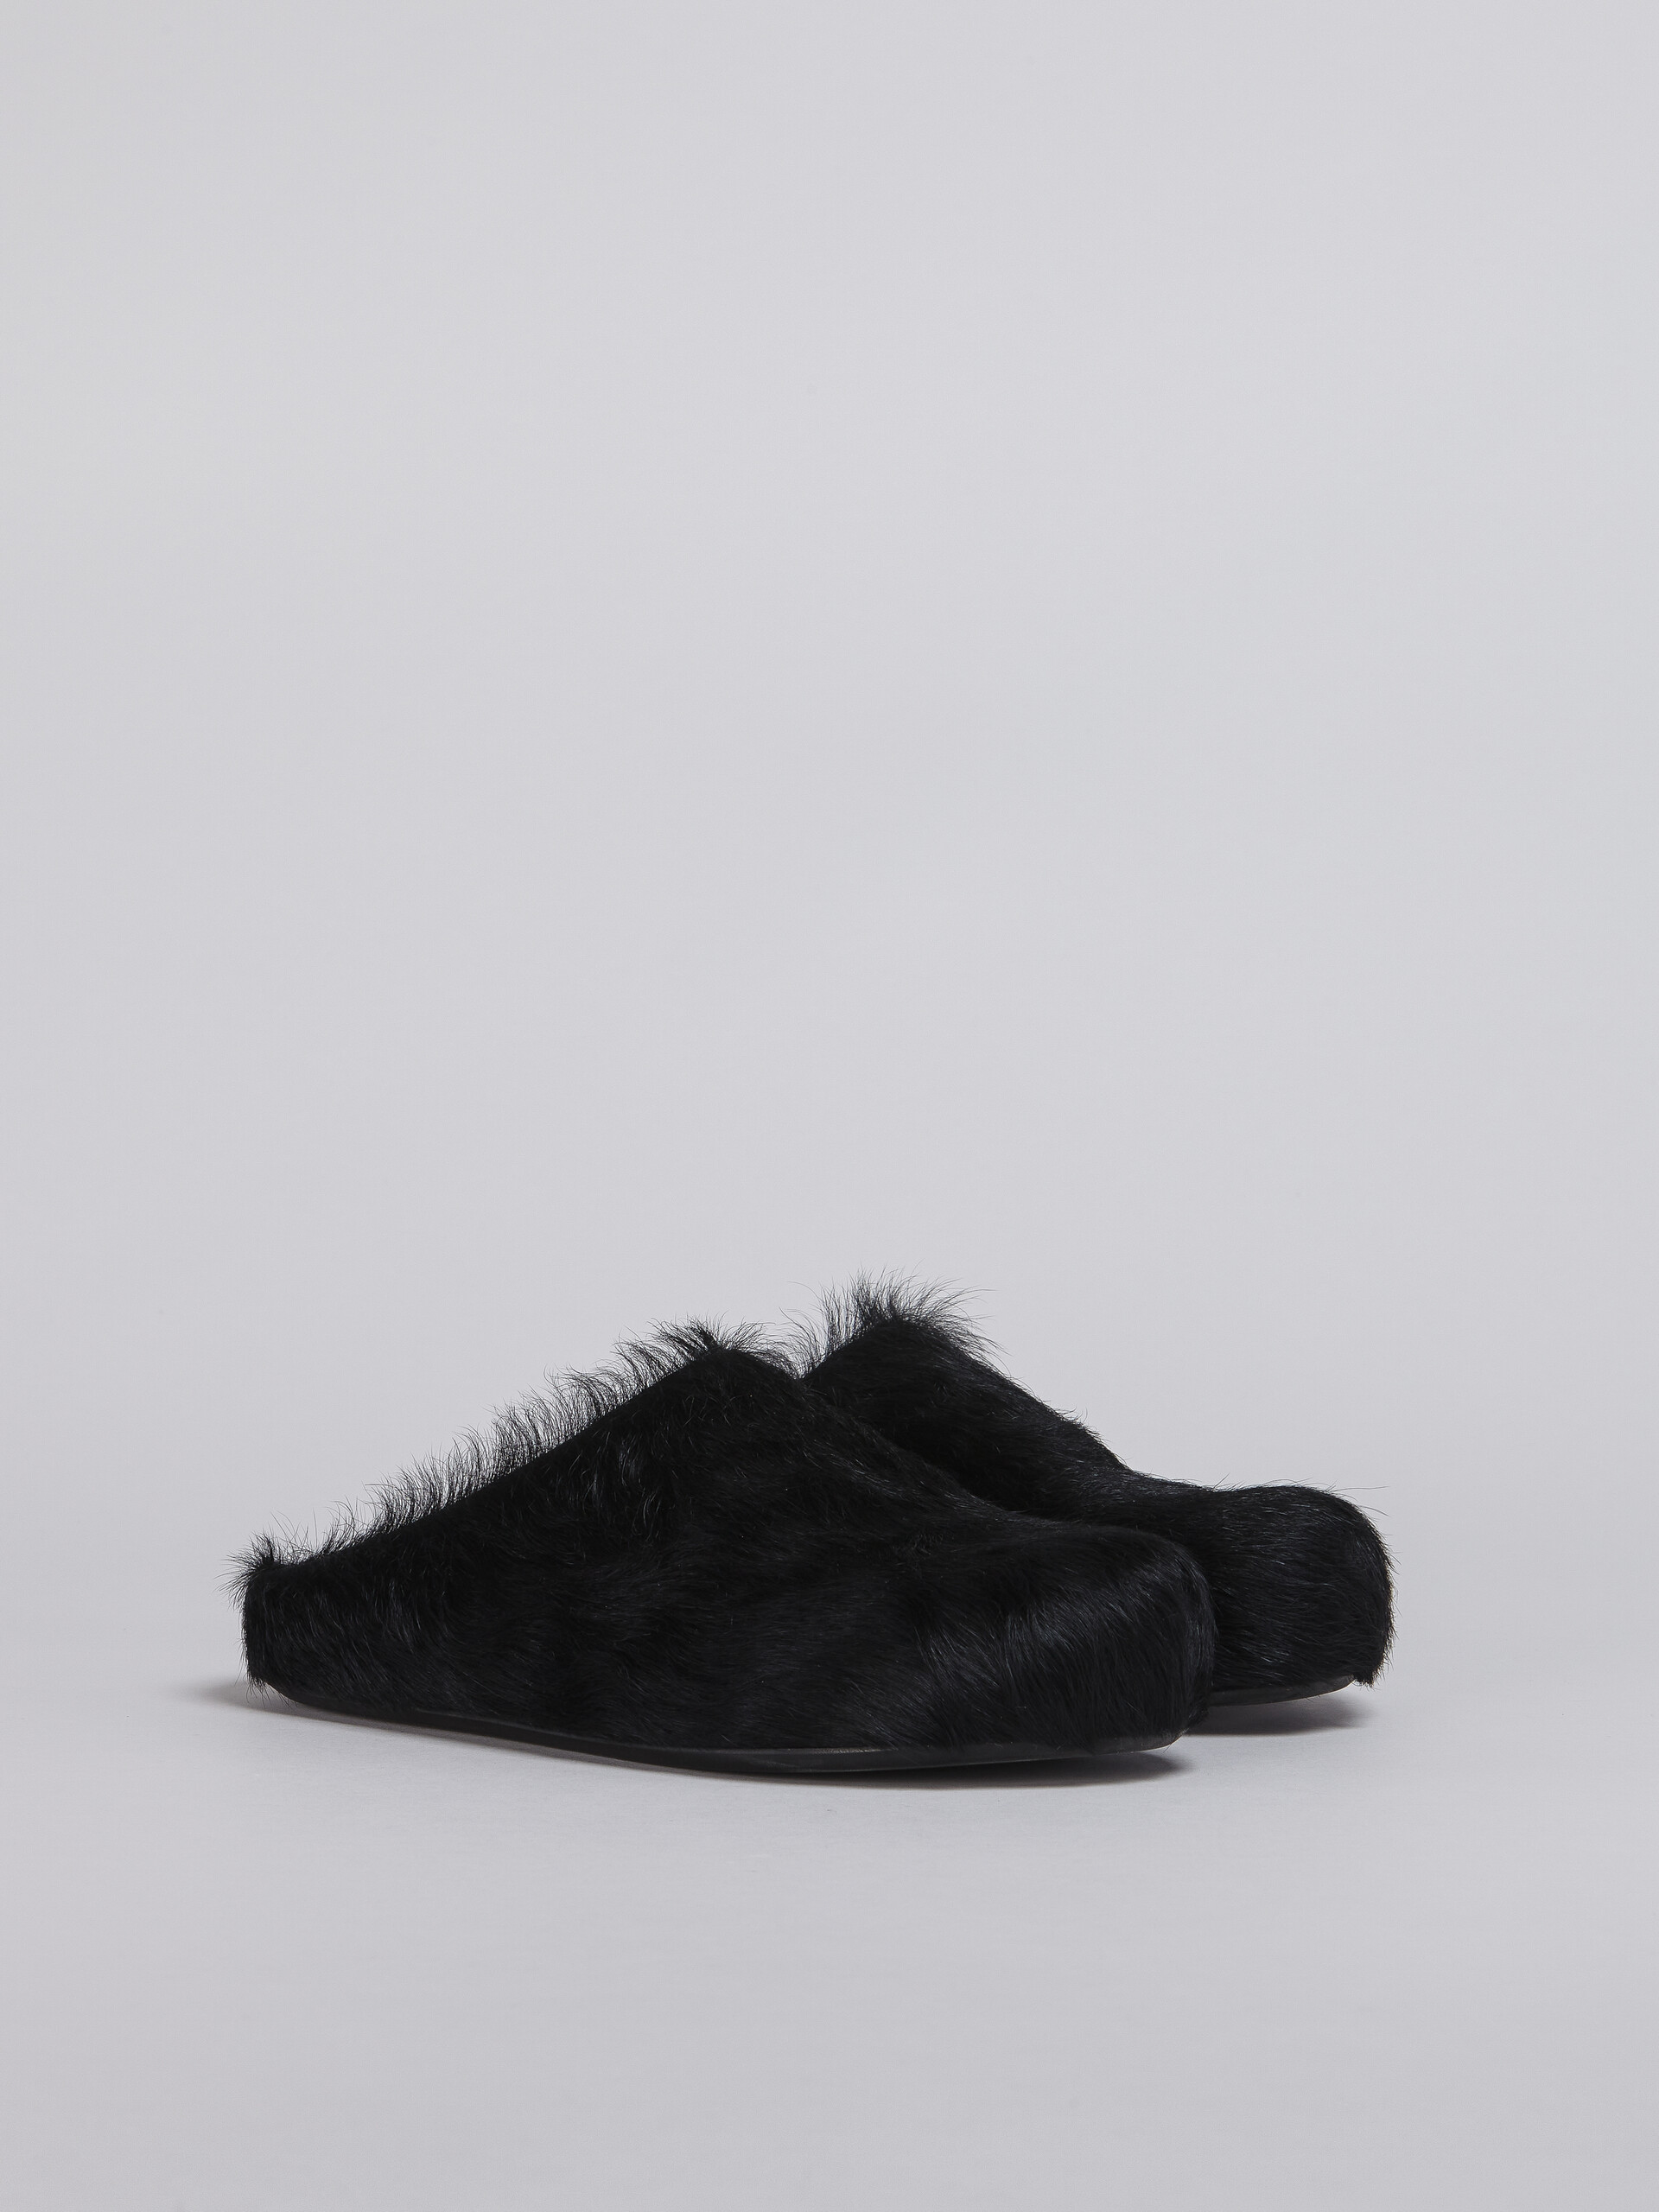 Black long-haired calfskin Fussbett sabot - Clogs - Image 2